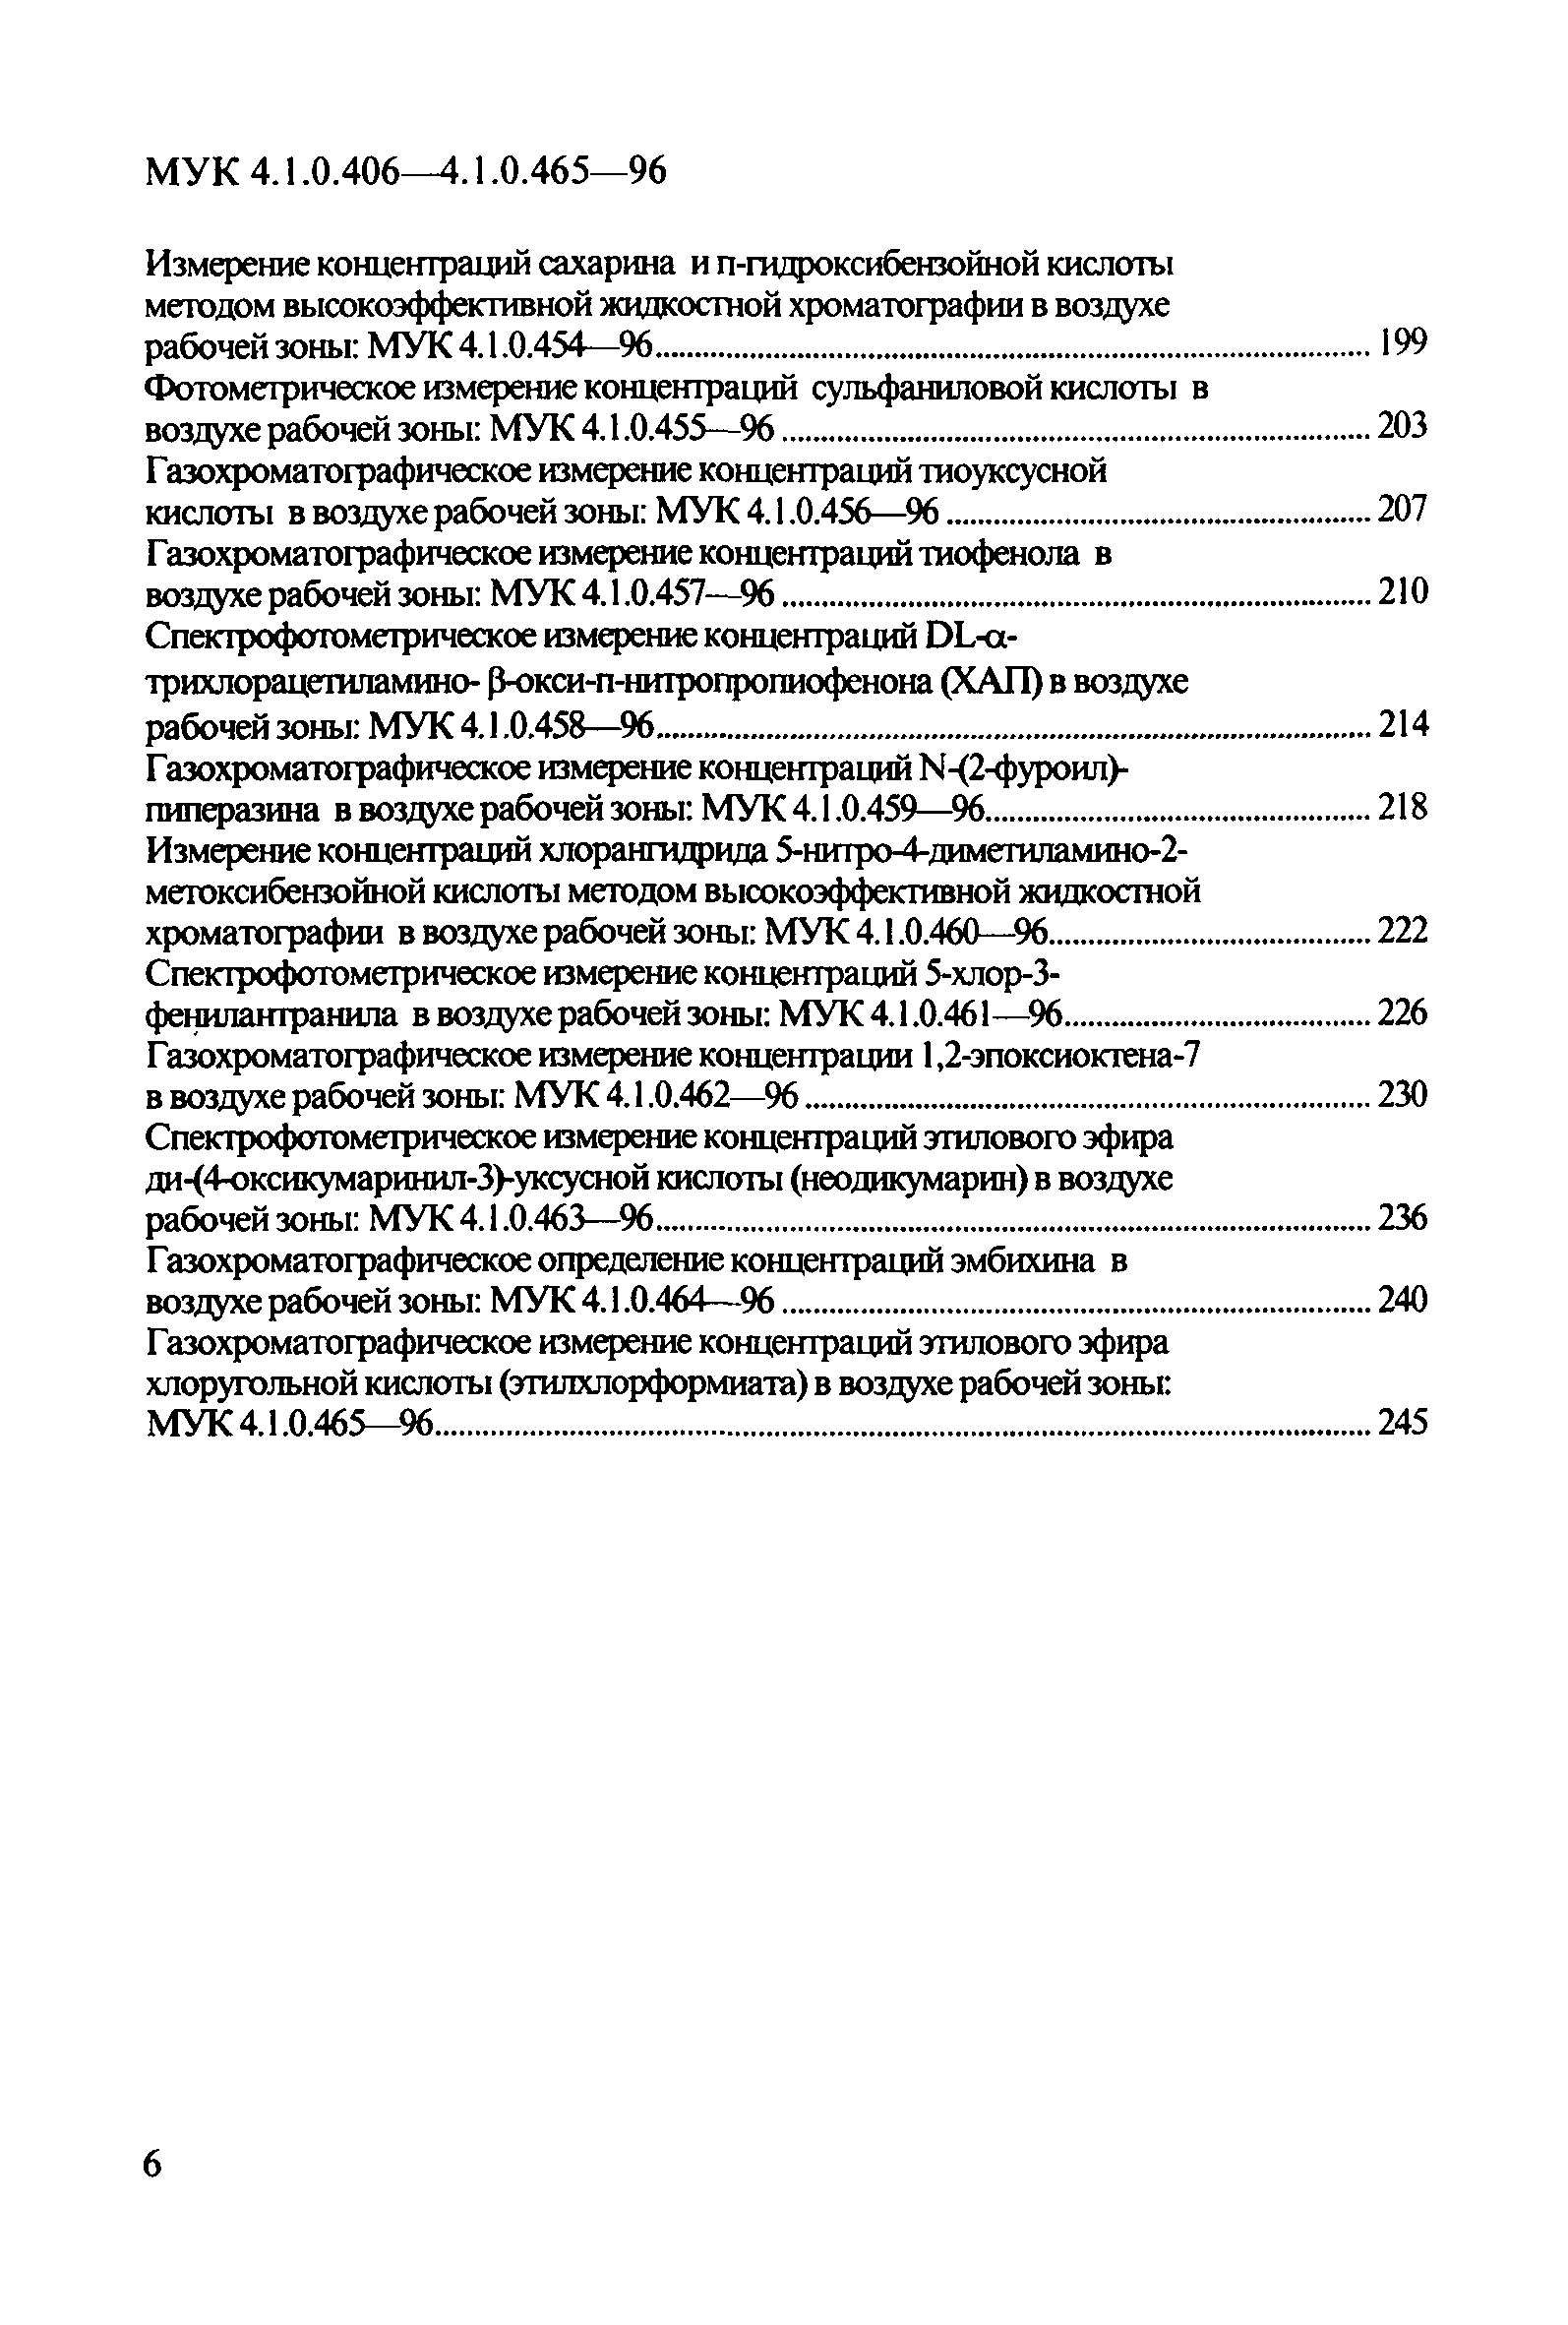 МУК 4.1.0.462-96